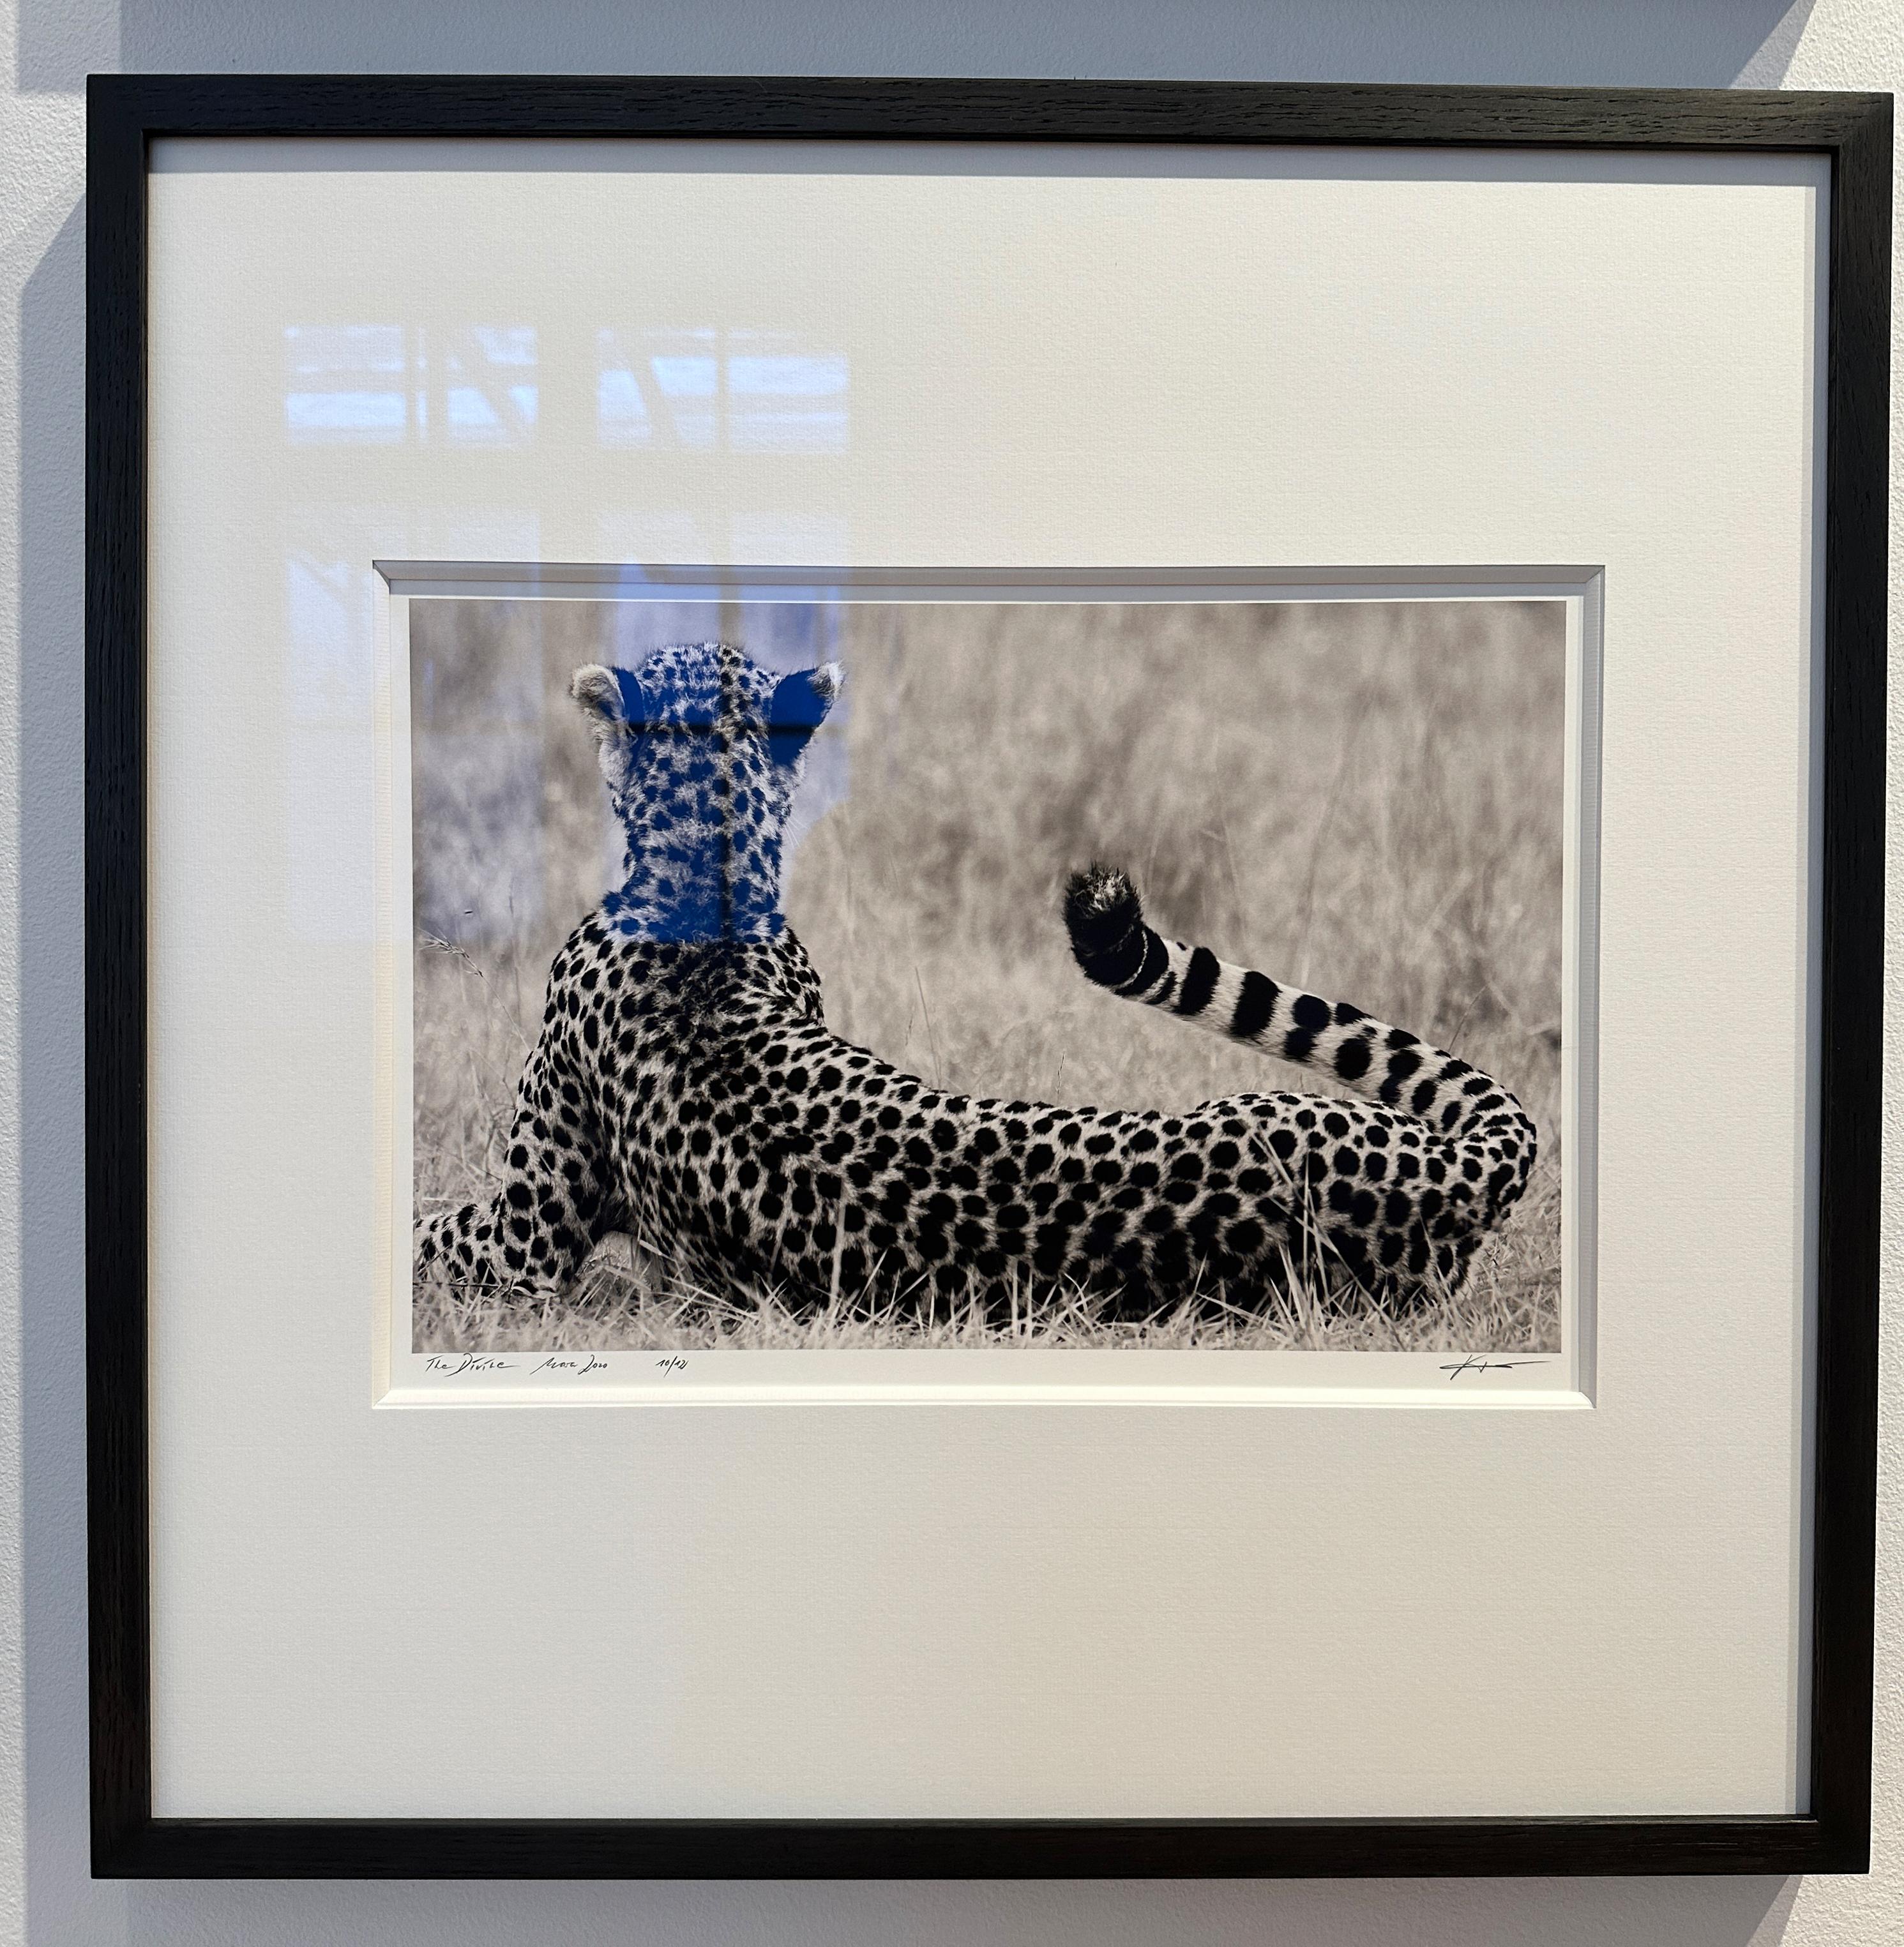 Le Divine, photographie d'animaux, noir et blanc, guépard, Afrique - Photograph de Joachim Schmeisser